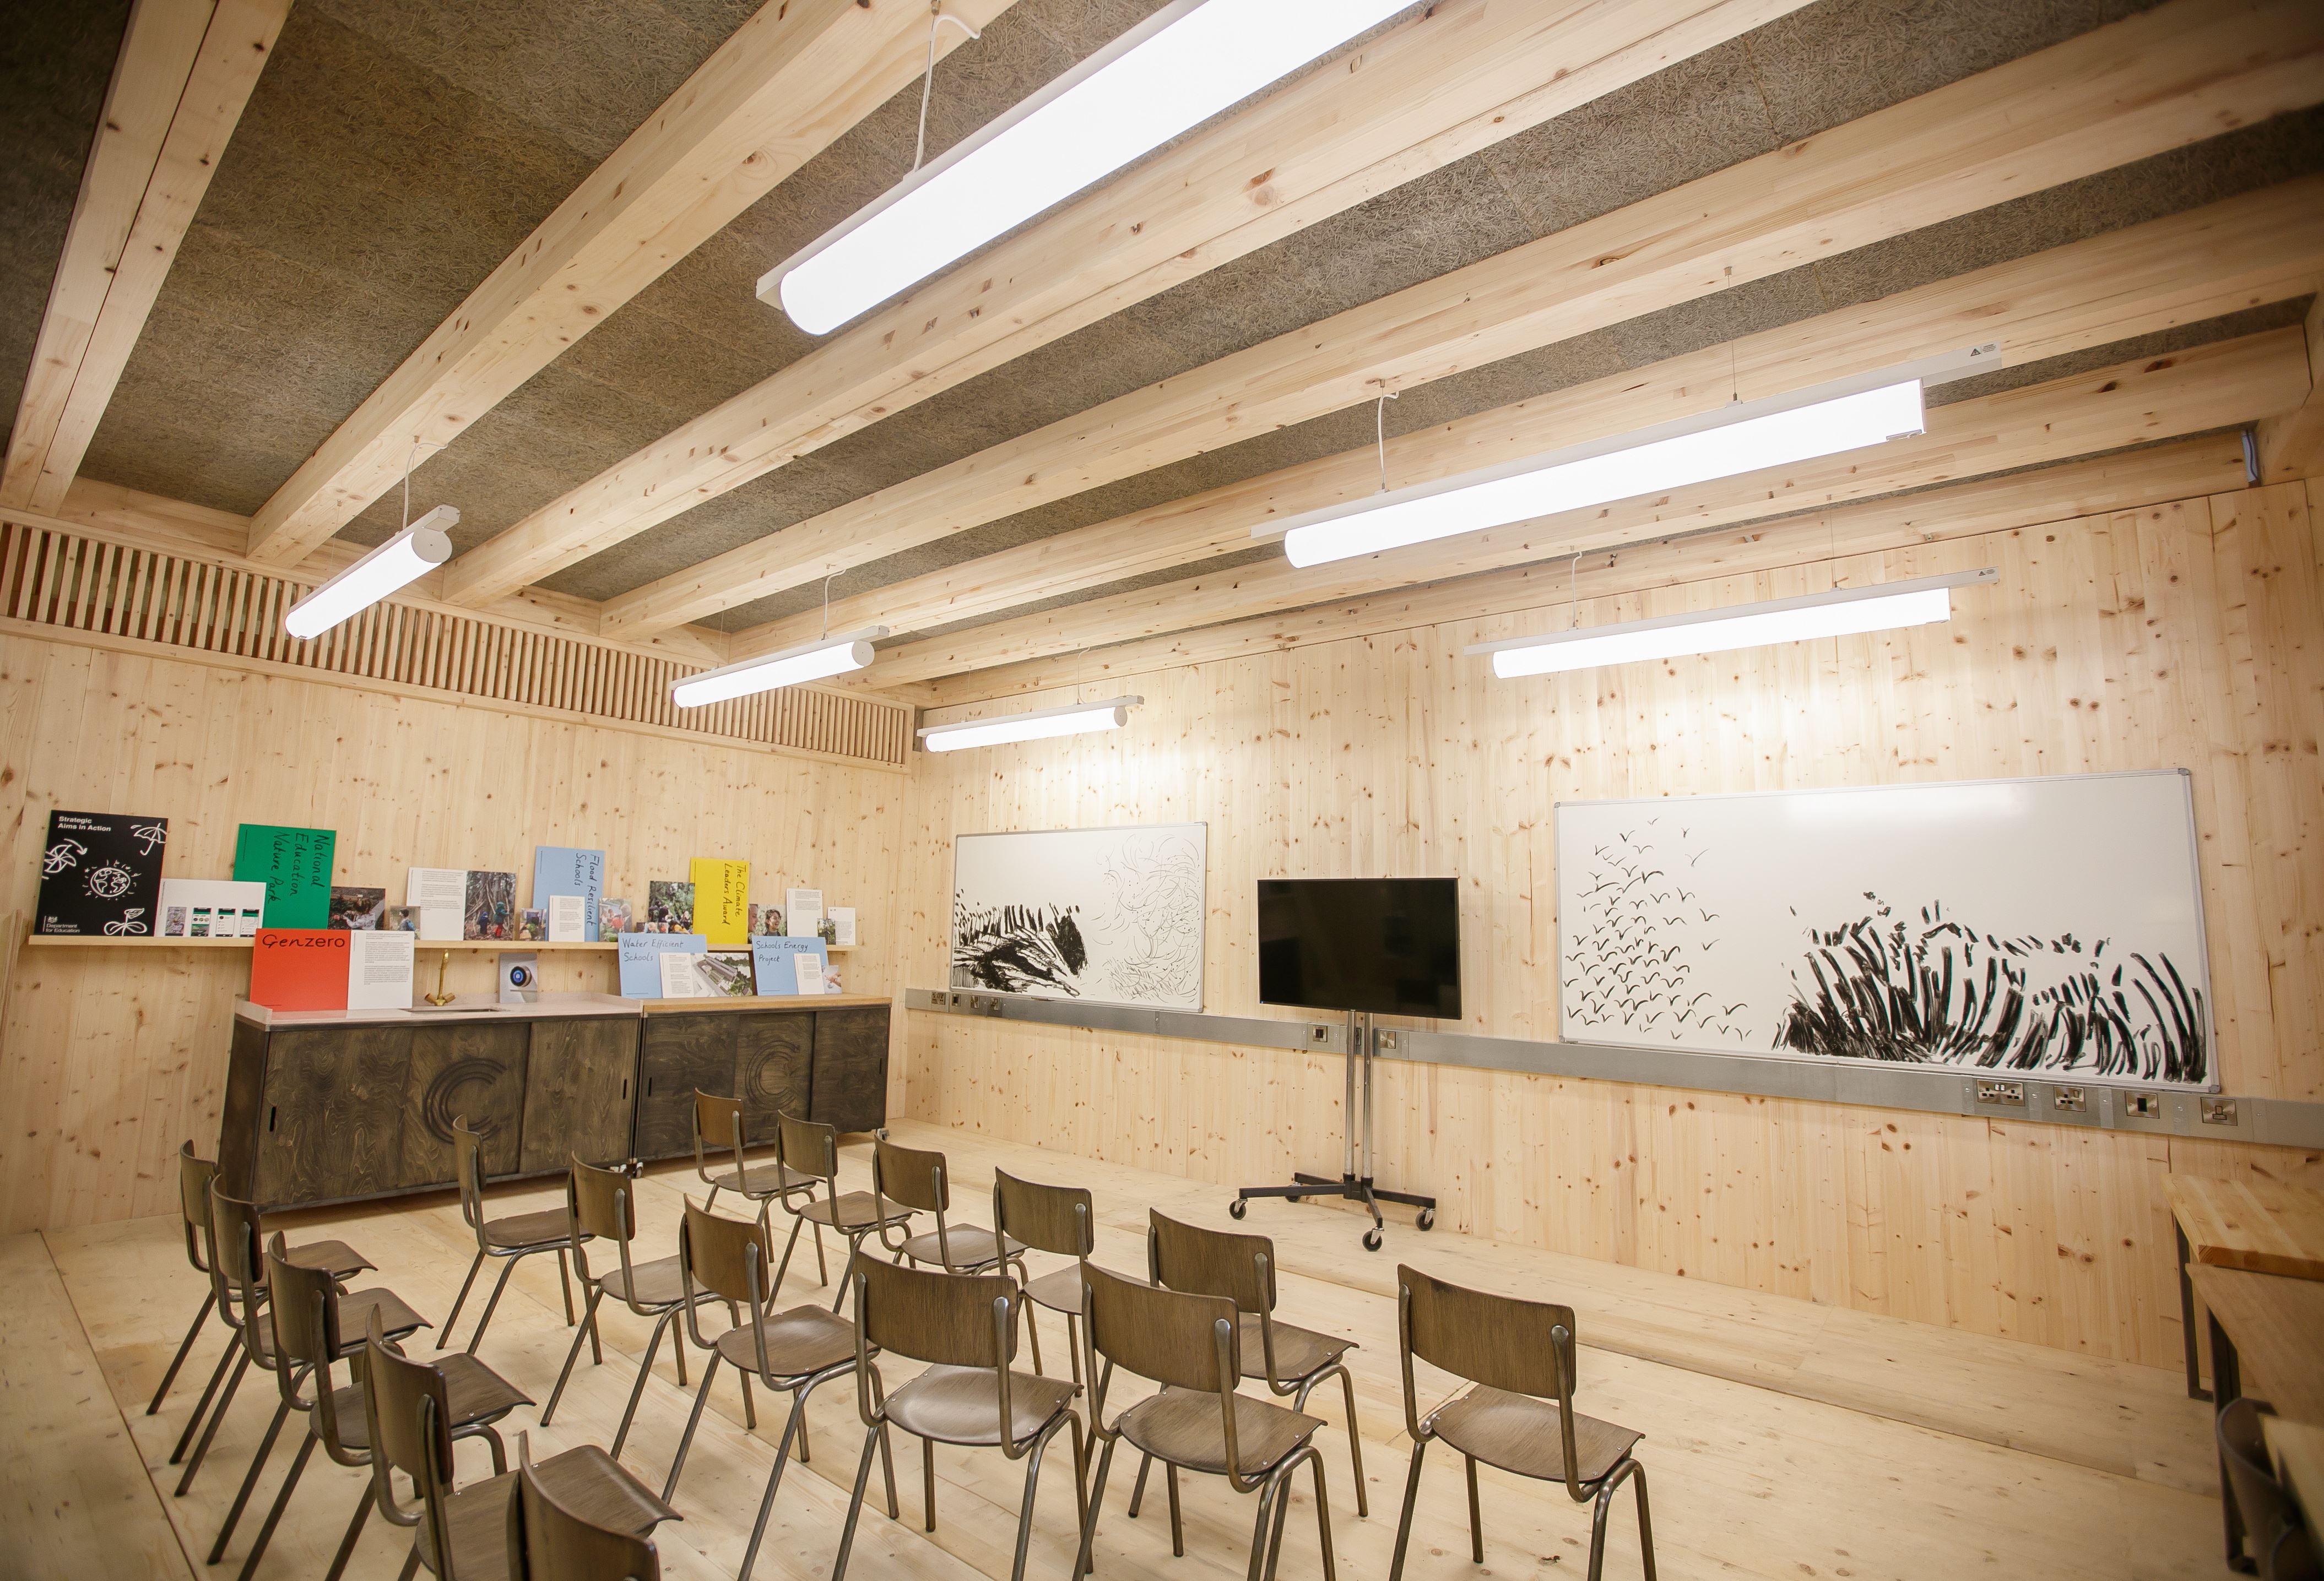 Timber classroom